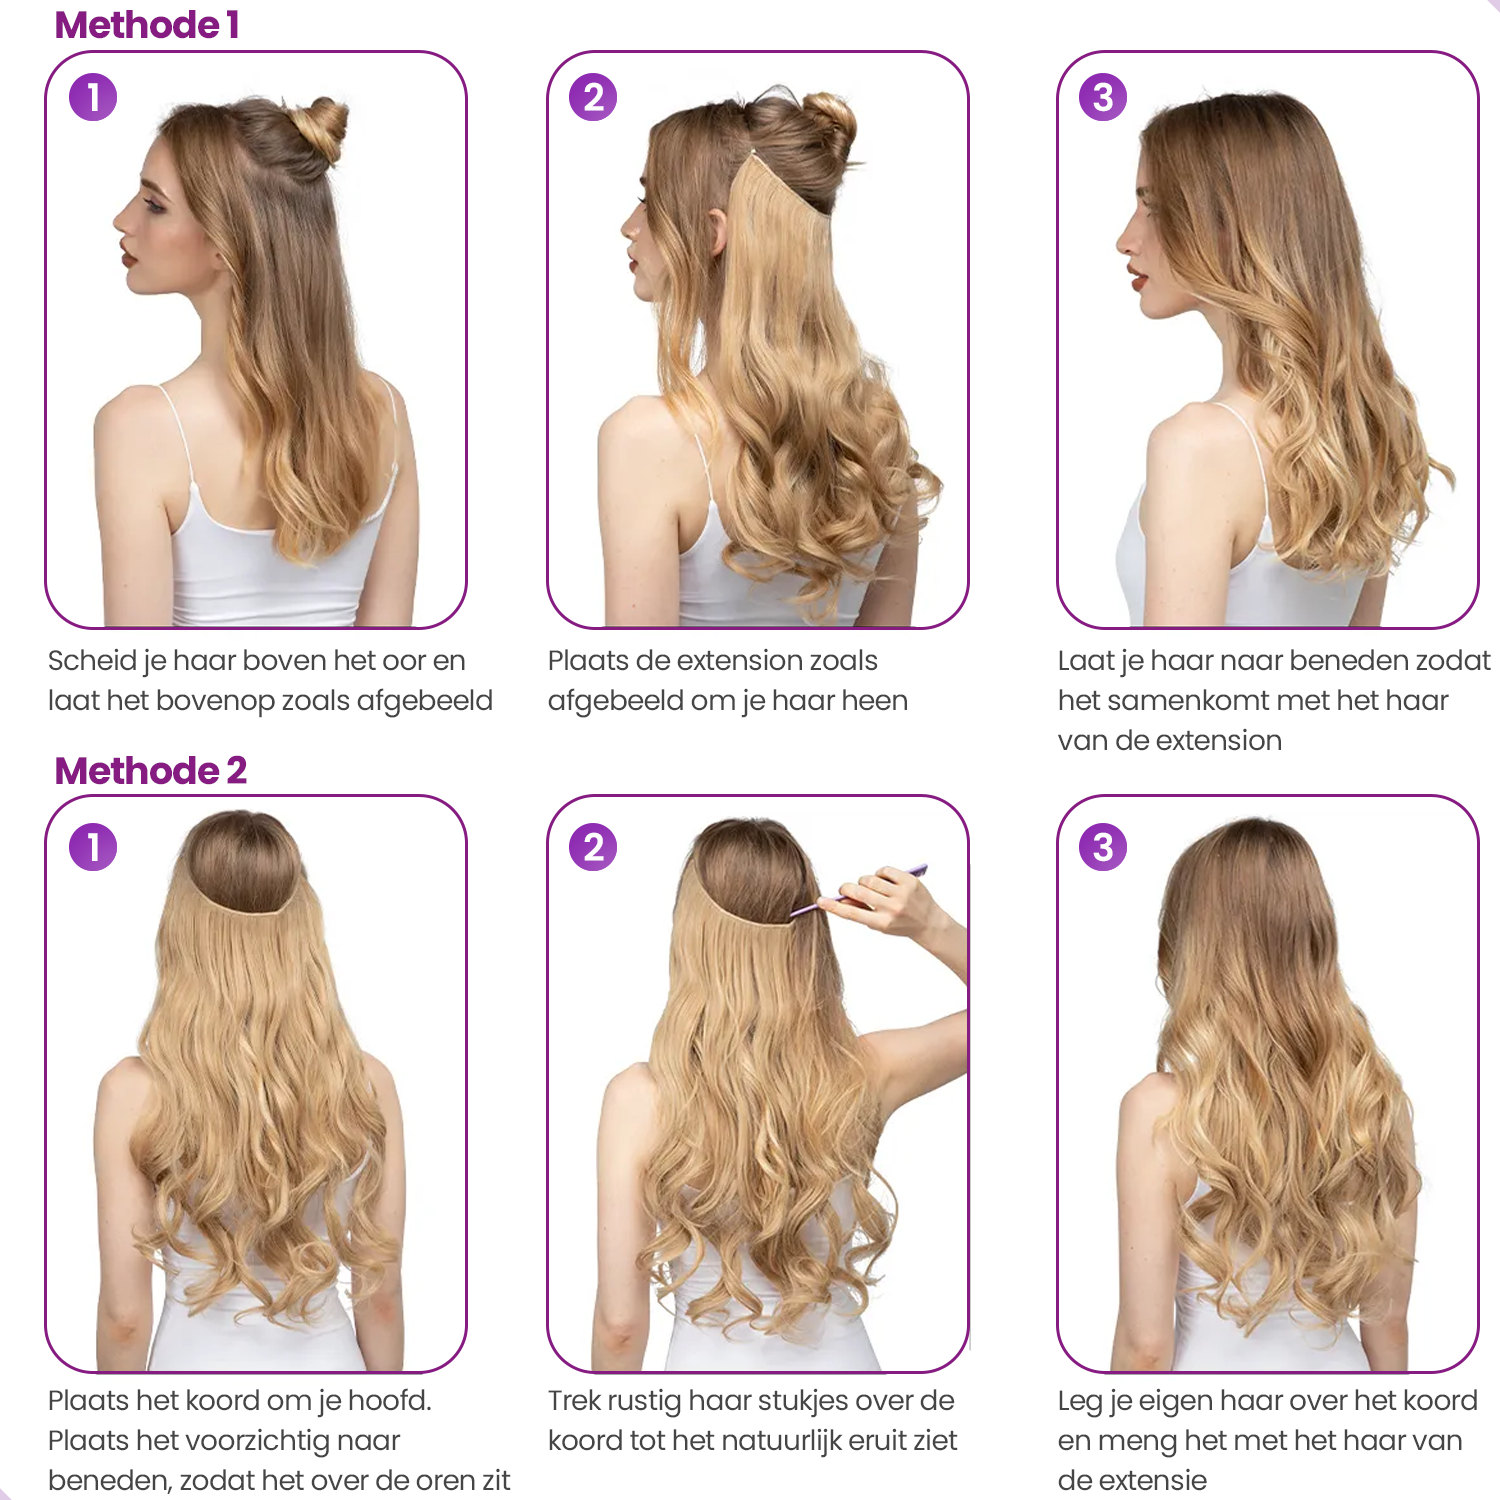 Hair Extensions - Blond Steil - Onzichtbare Scheiding - Natuurlijke Look - Hair extension - 45 cm